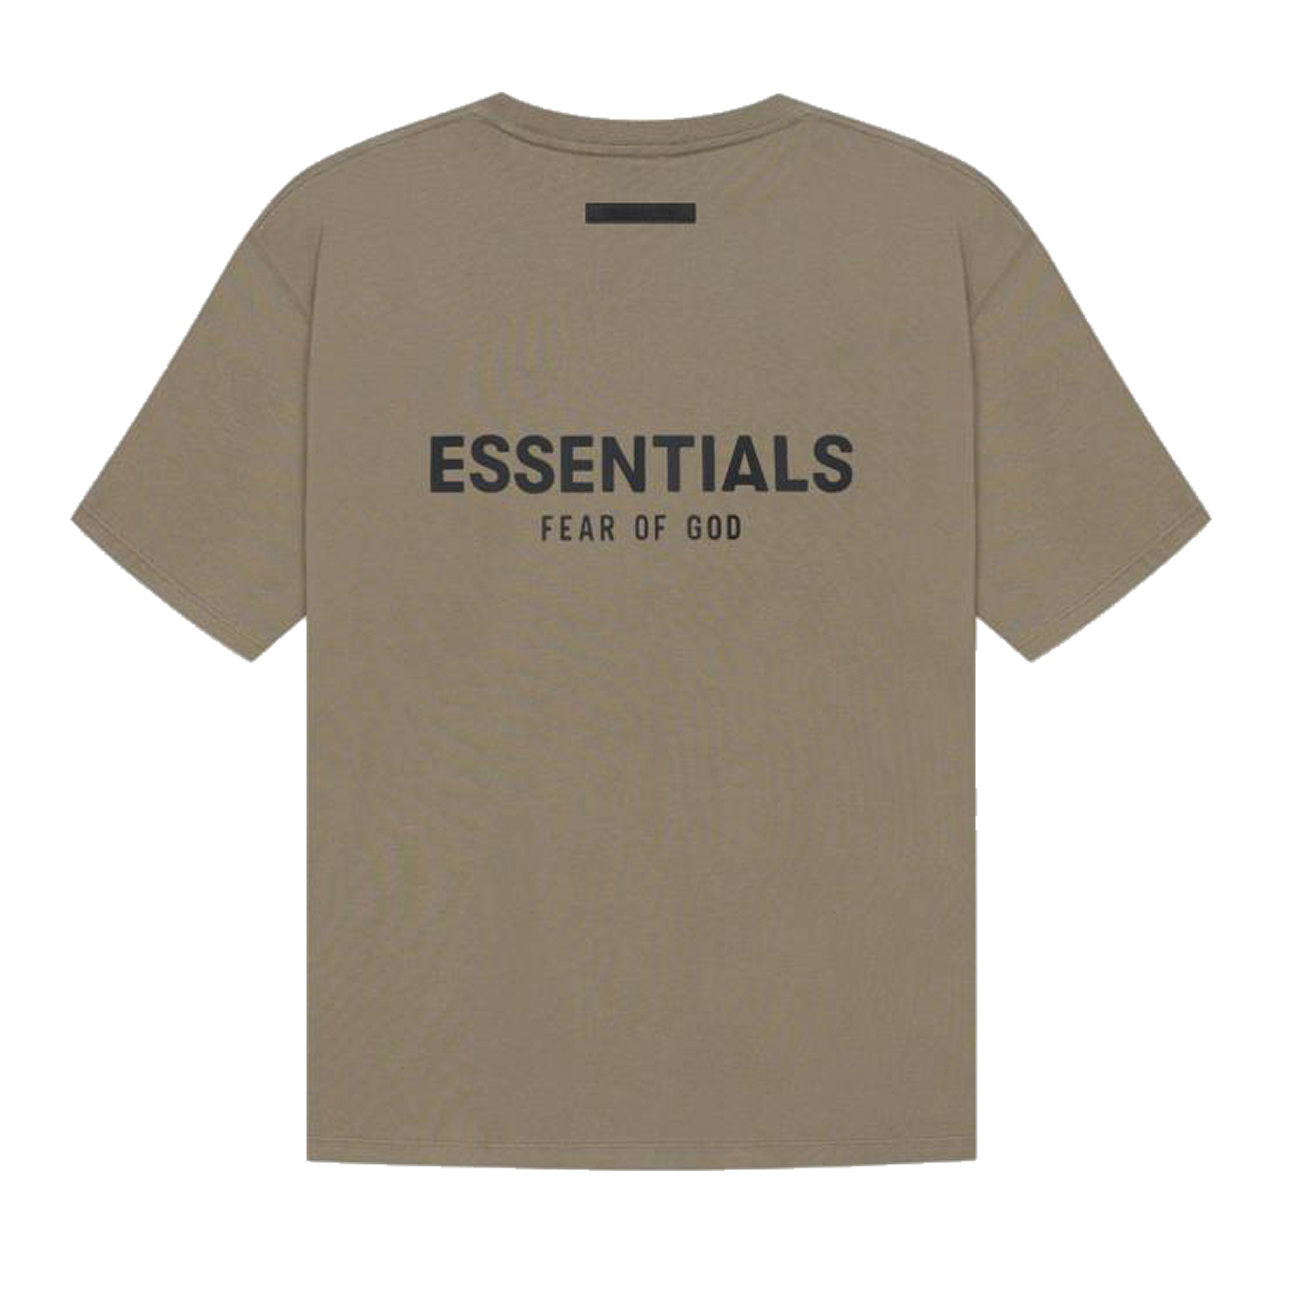 Fear Of God Essentials T Shirt Cream Buttercream Ss21 (10) - newkick.org